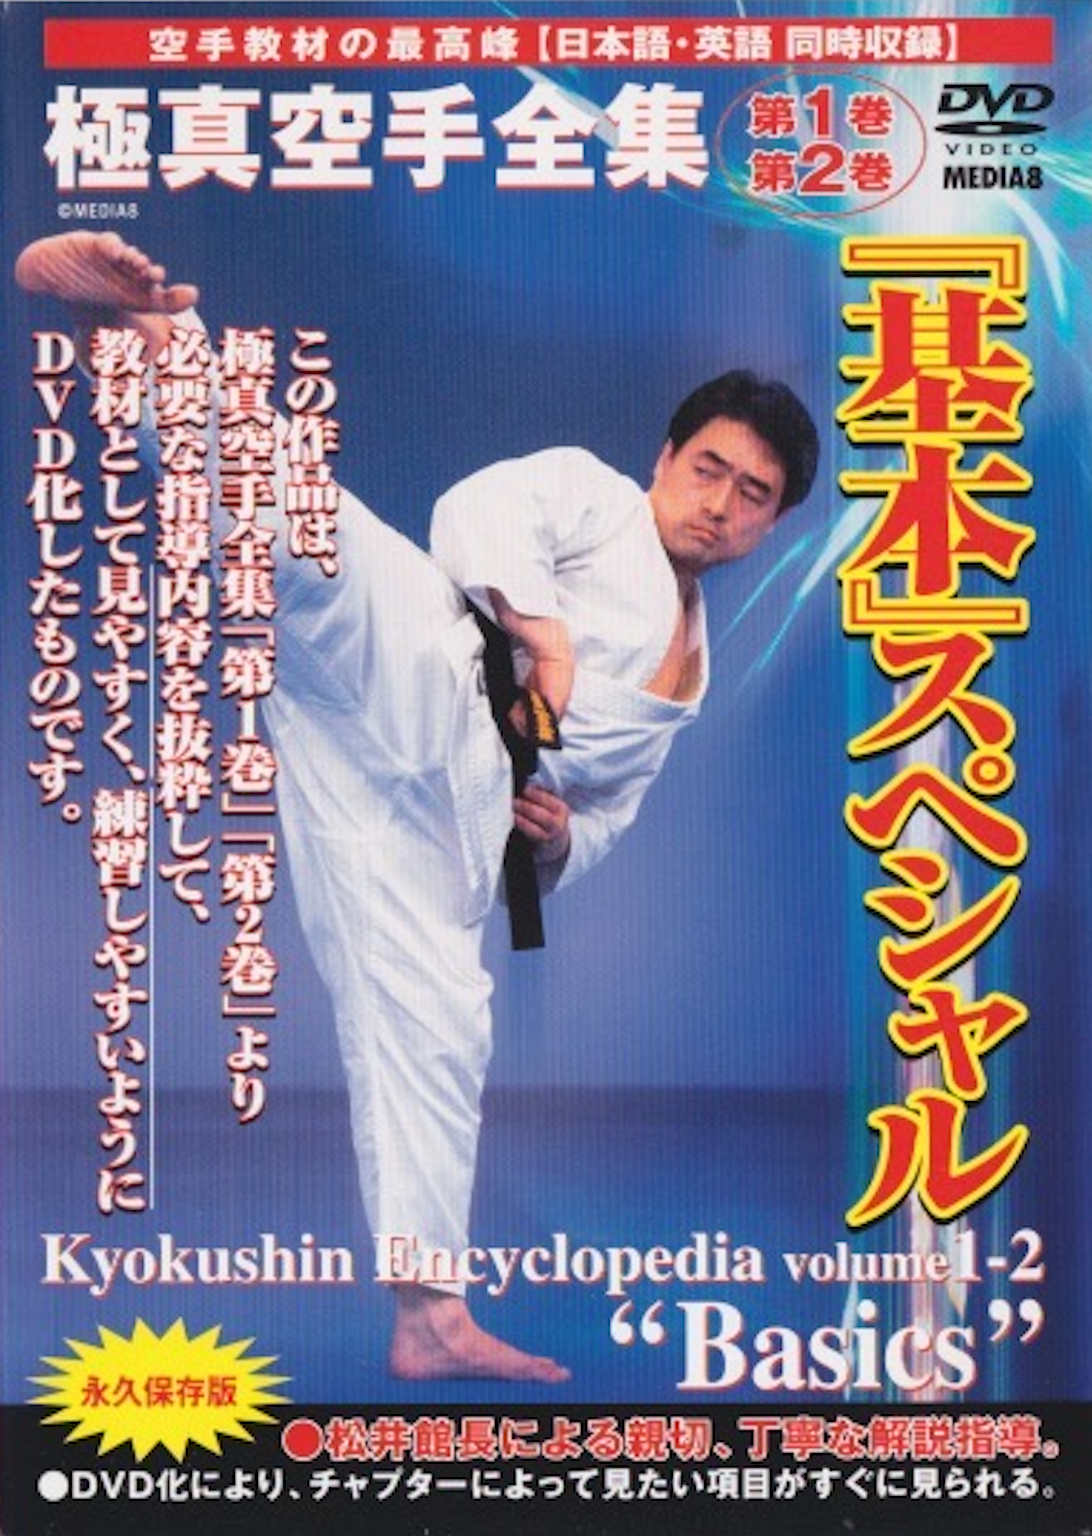 Enciclopedia de Karate Kyokushin Vol 1 y 2: DVD básicos.